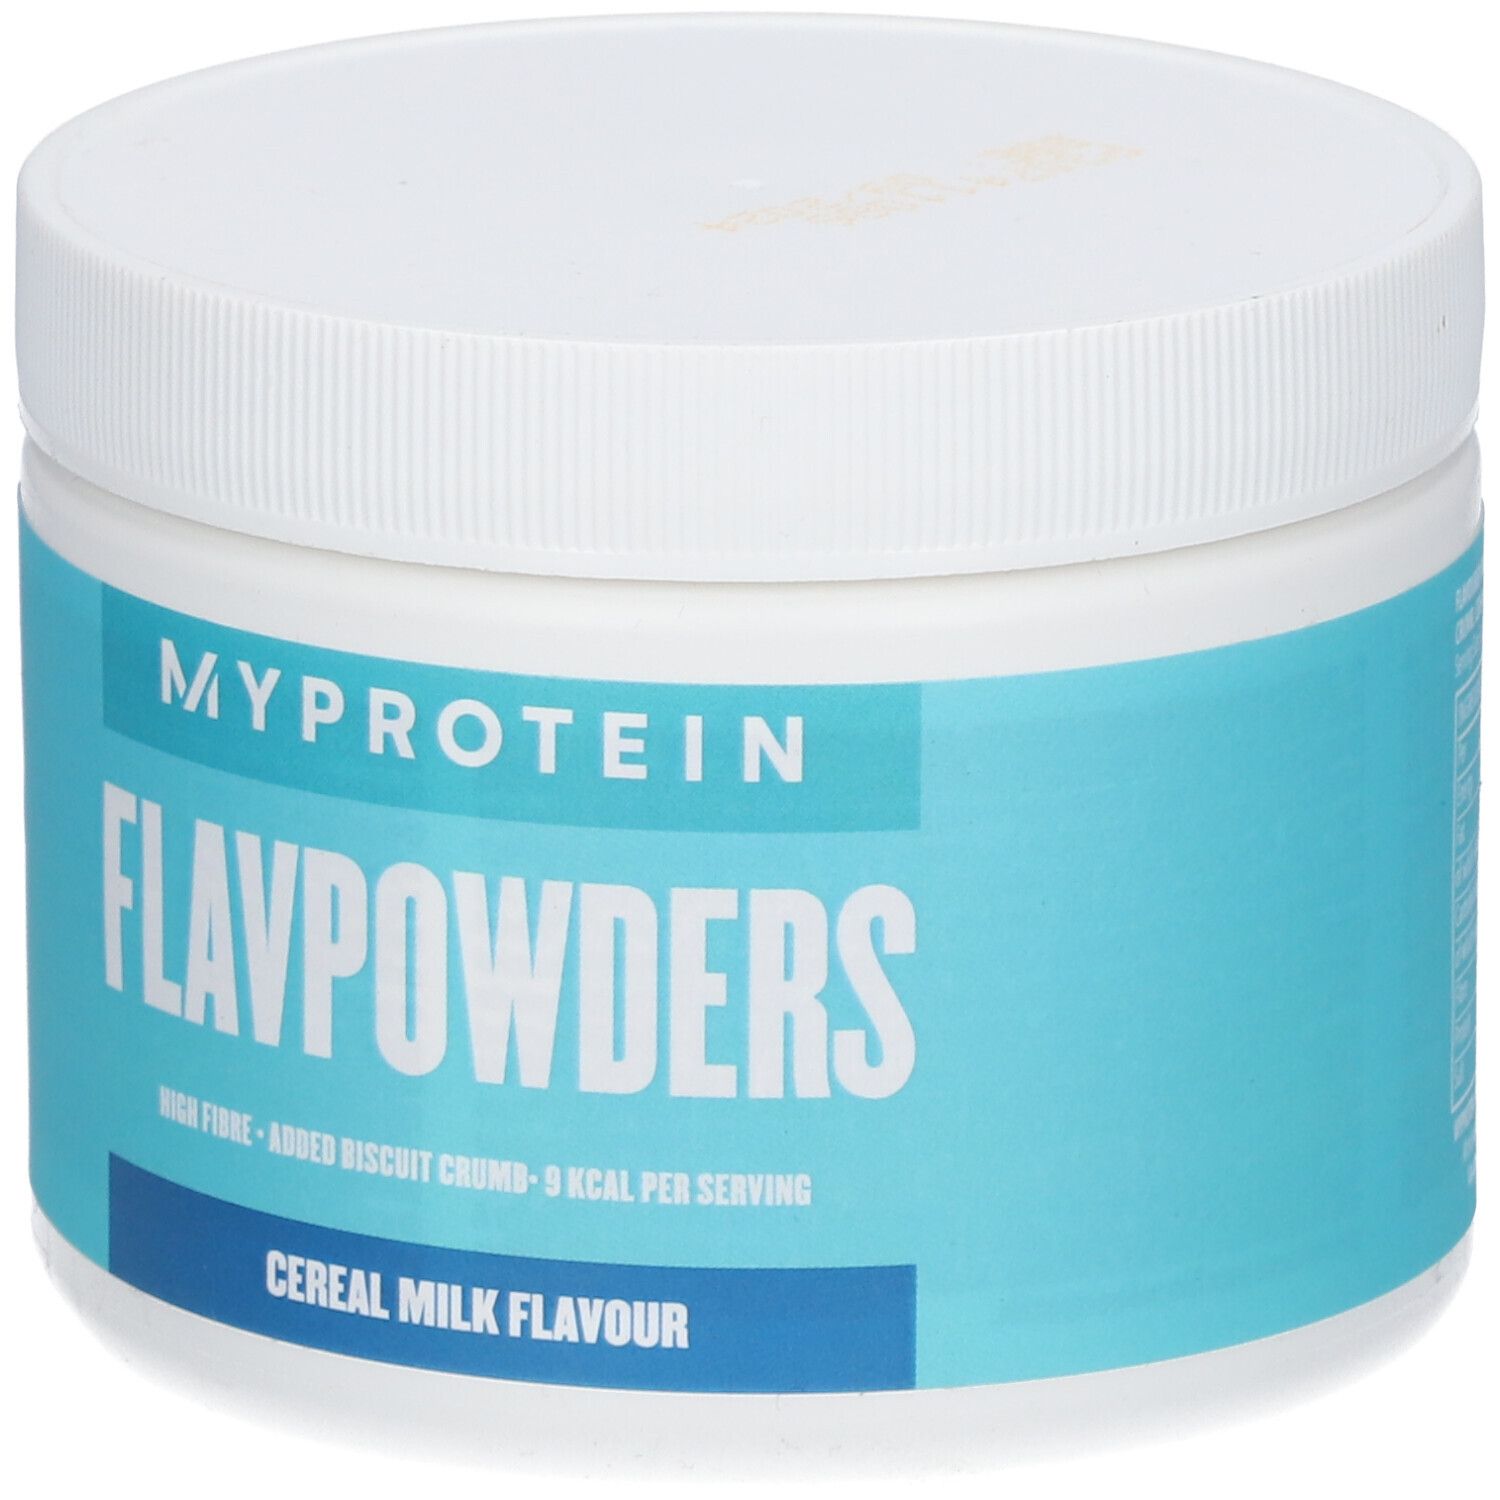 MyProtein FlavPowders Cereal Milk